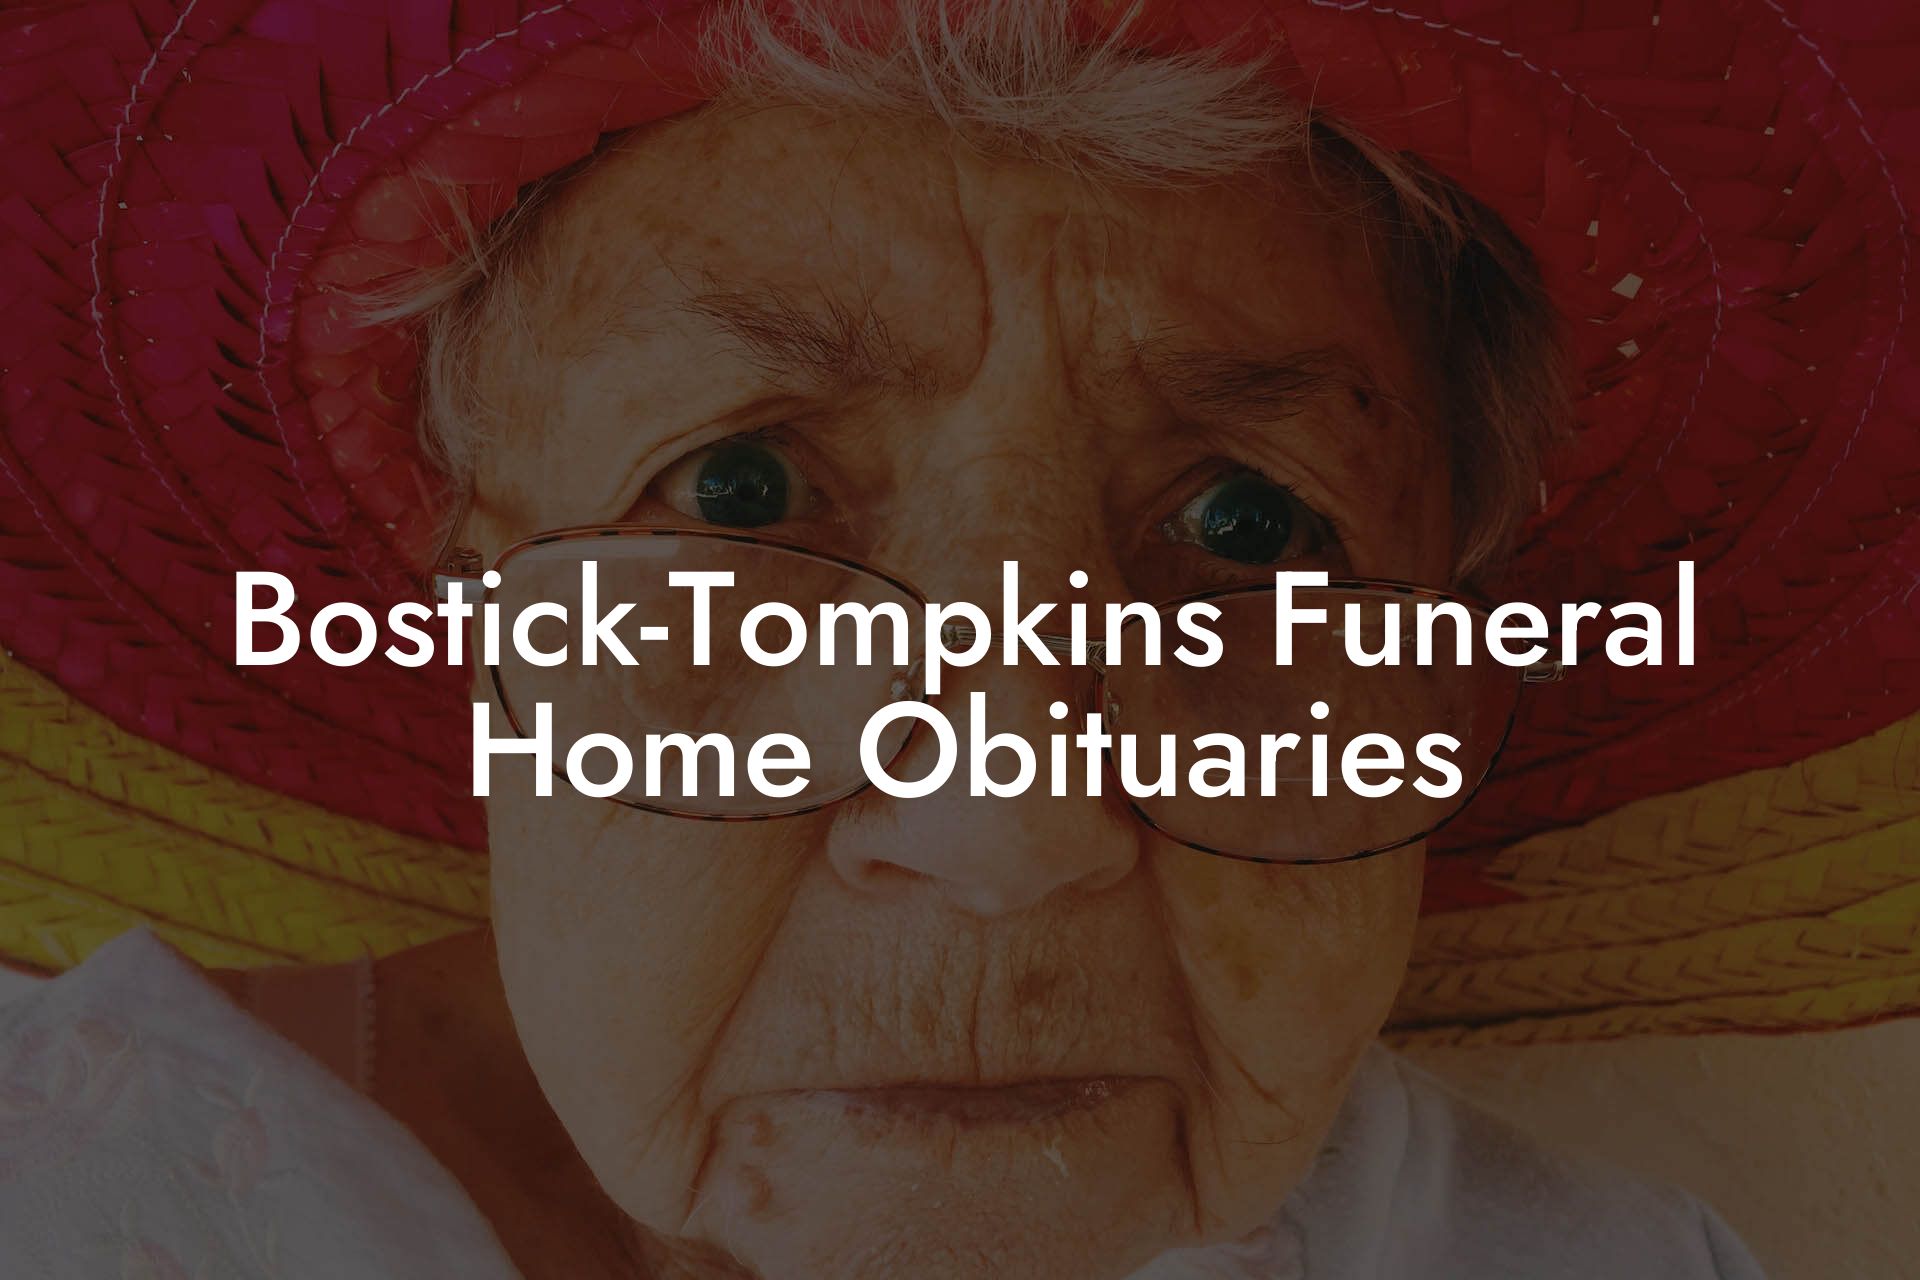 Bostick-Tompkins Funeral Home Obituaries